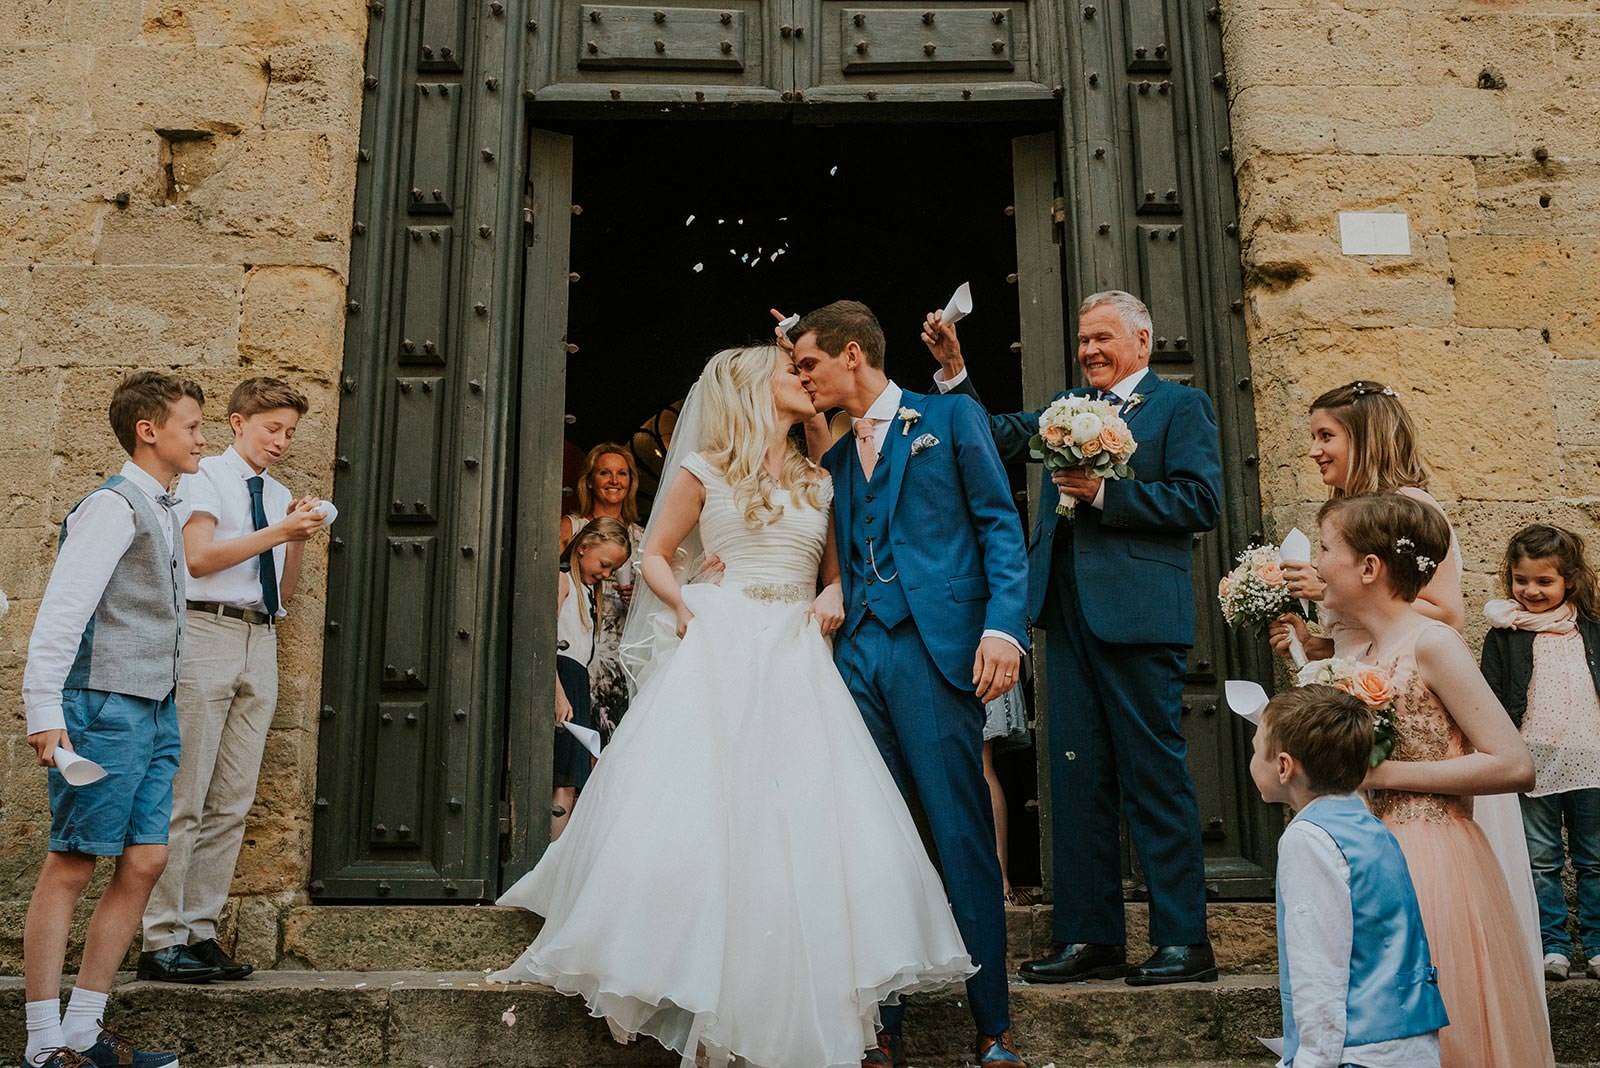 Ceremony - Wedding Ceremony in Volterra